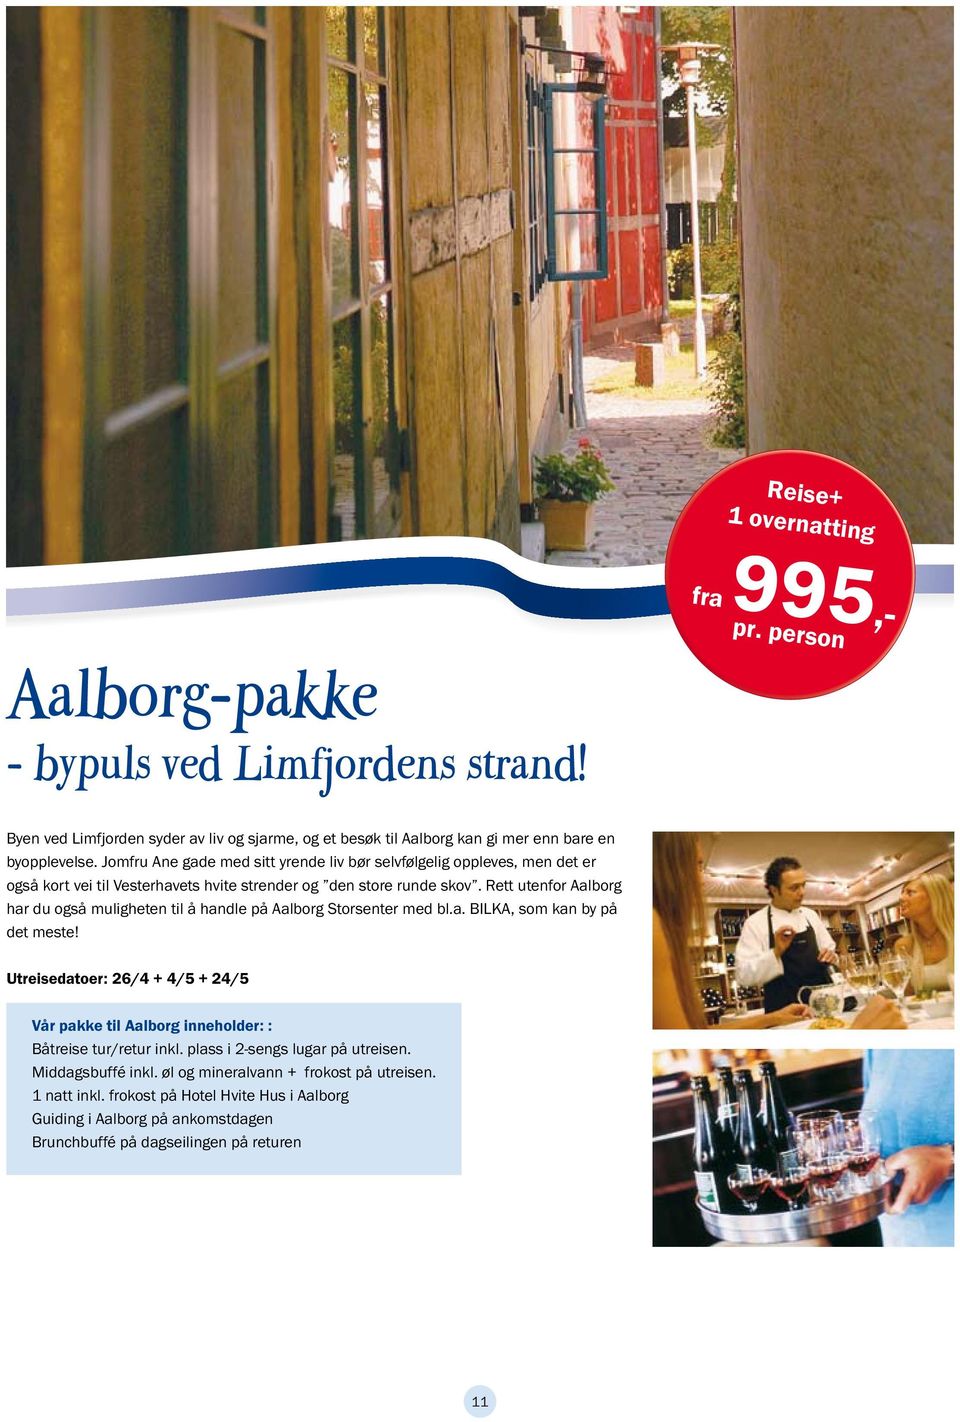 Rett utenfor Aalborg har du også muligheten til å handle på Aalborg Storsenter med bl.a. BILKA, som kan by på det meste!